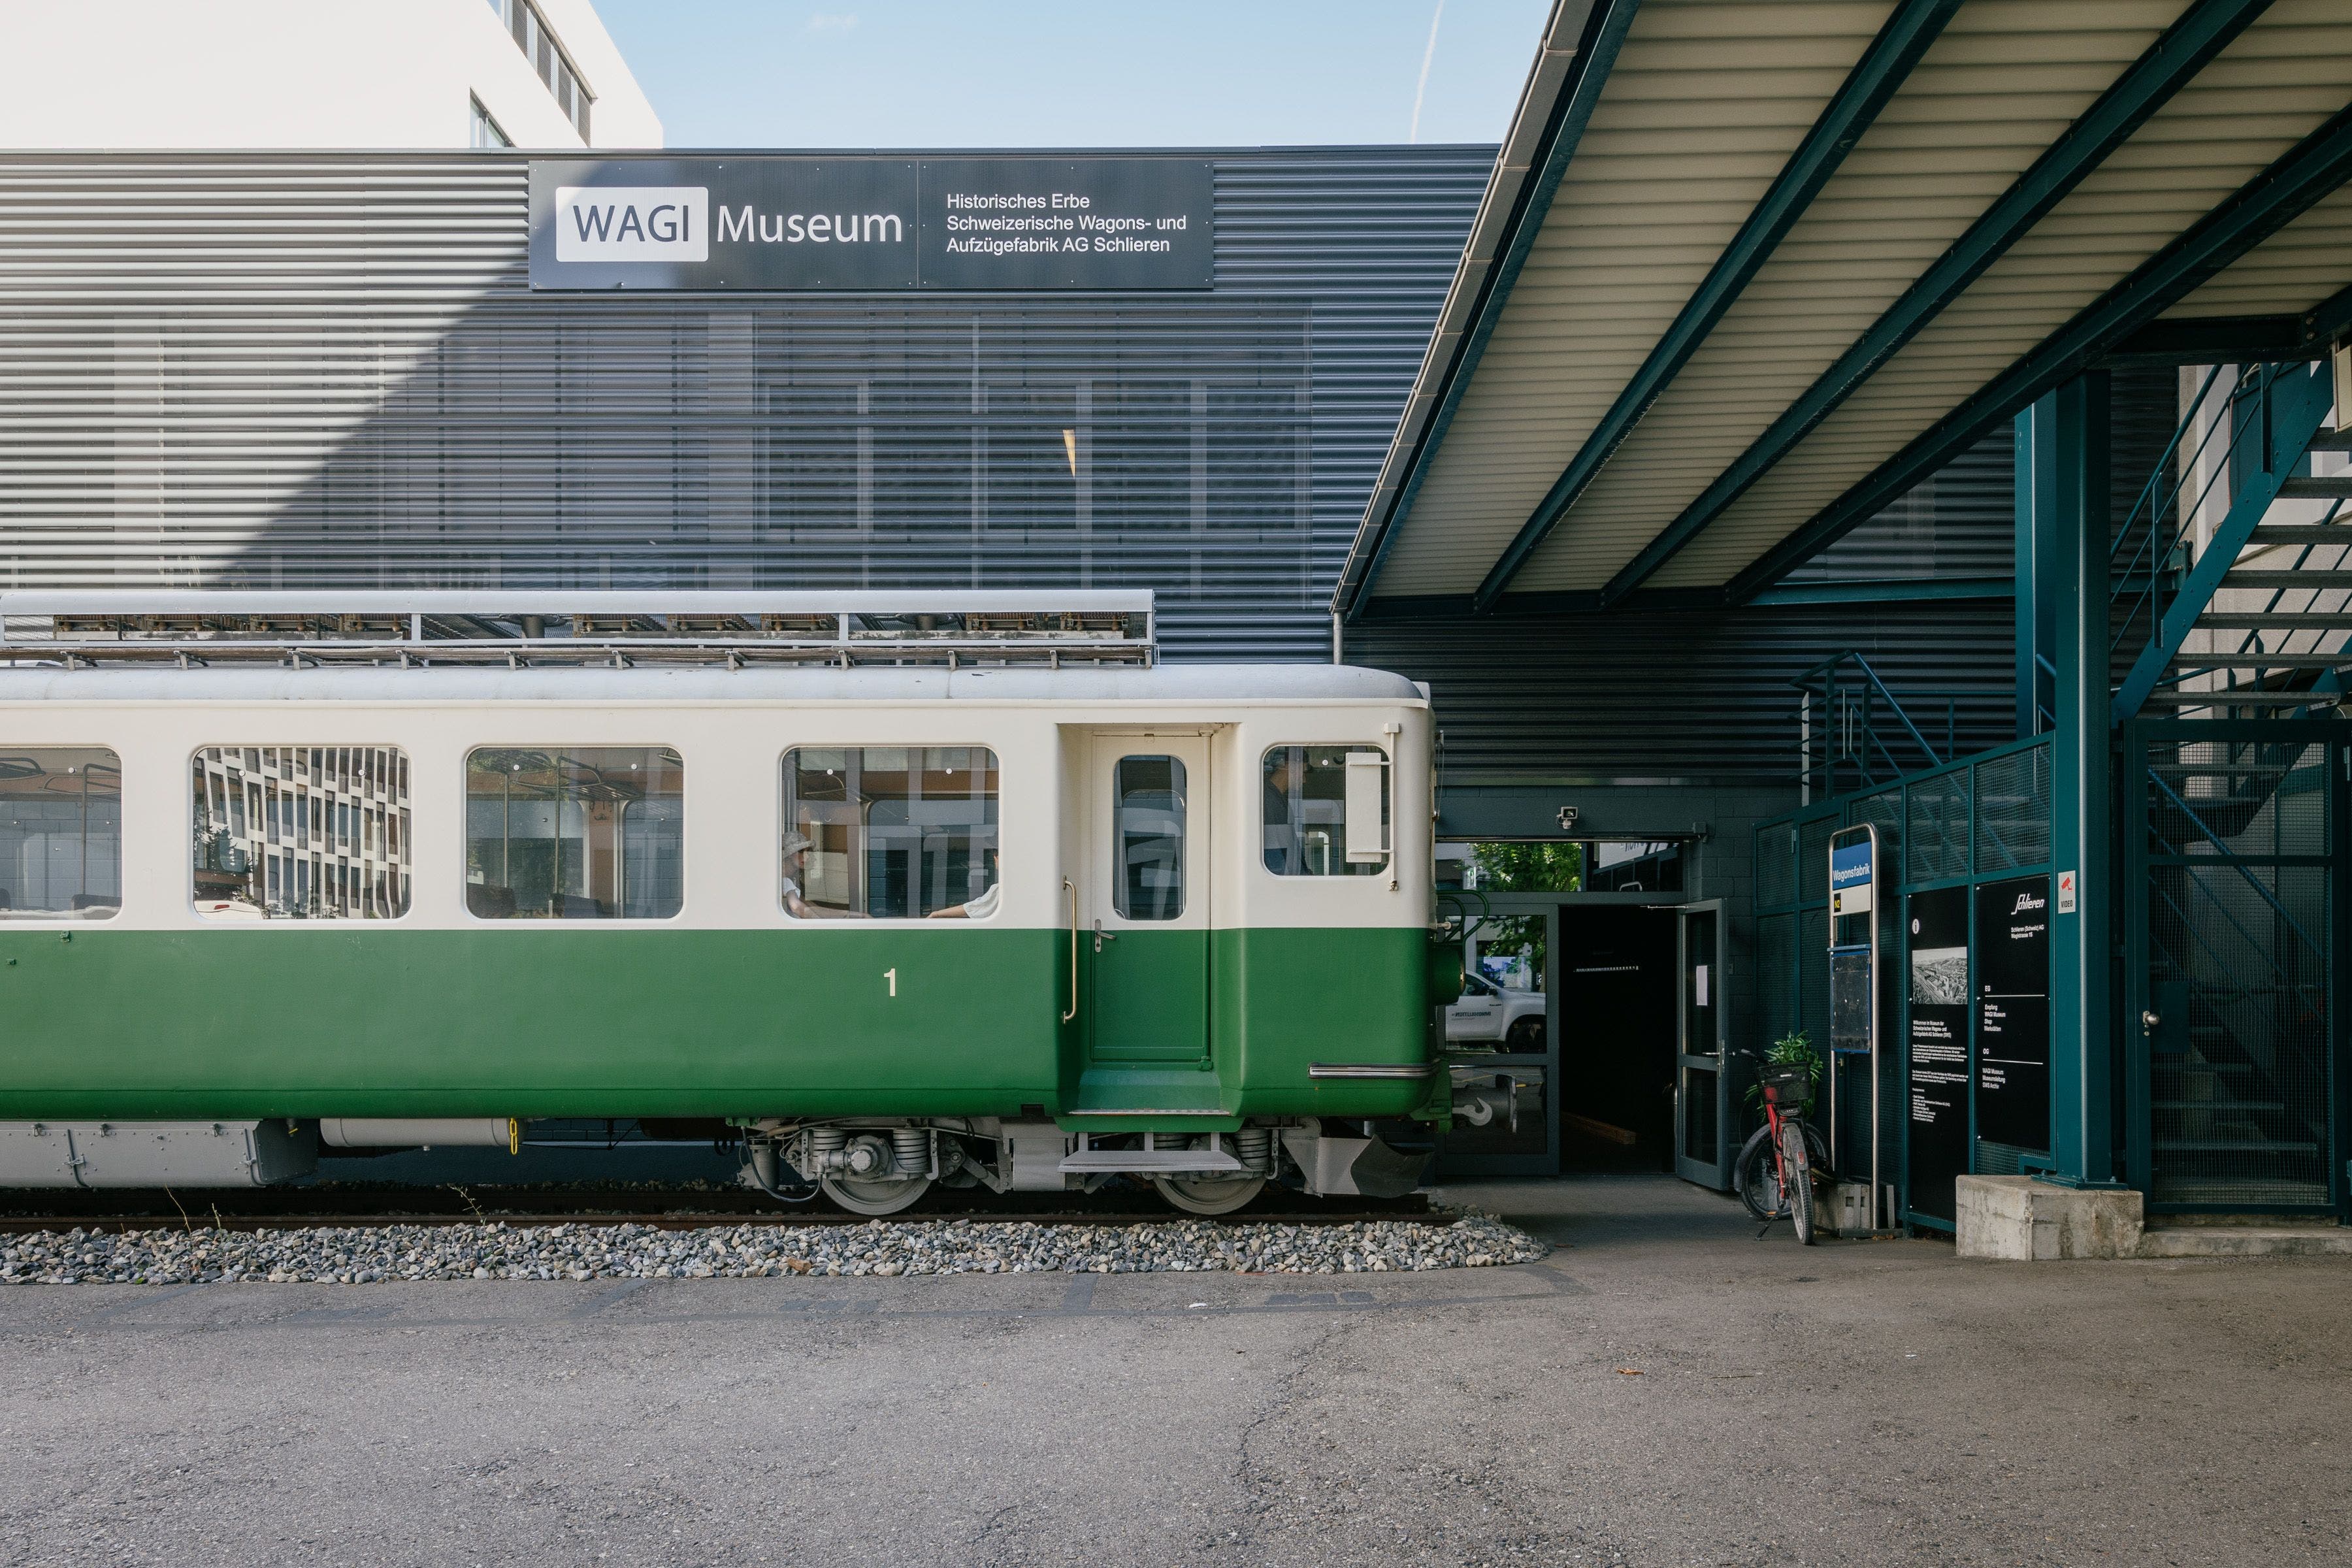 Der 1963 in der Wagi gebaute Triebwagen zeigt den Weg zum Museumseingang. Im Sommer 2021 holte der Verein Wagi Schlieren den 28-Tonnen-Koloss mit einem spektakulären Transport durch den Gotthard aus dem Bündnerland zurück nach Schlieren.